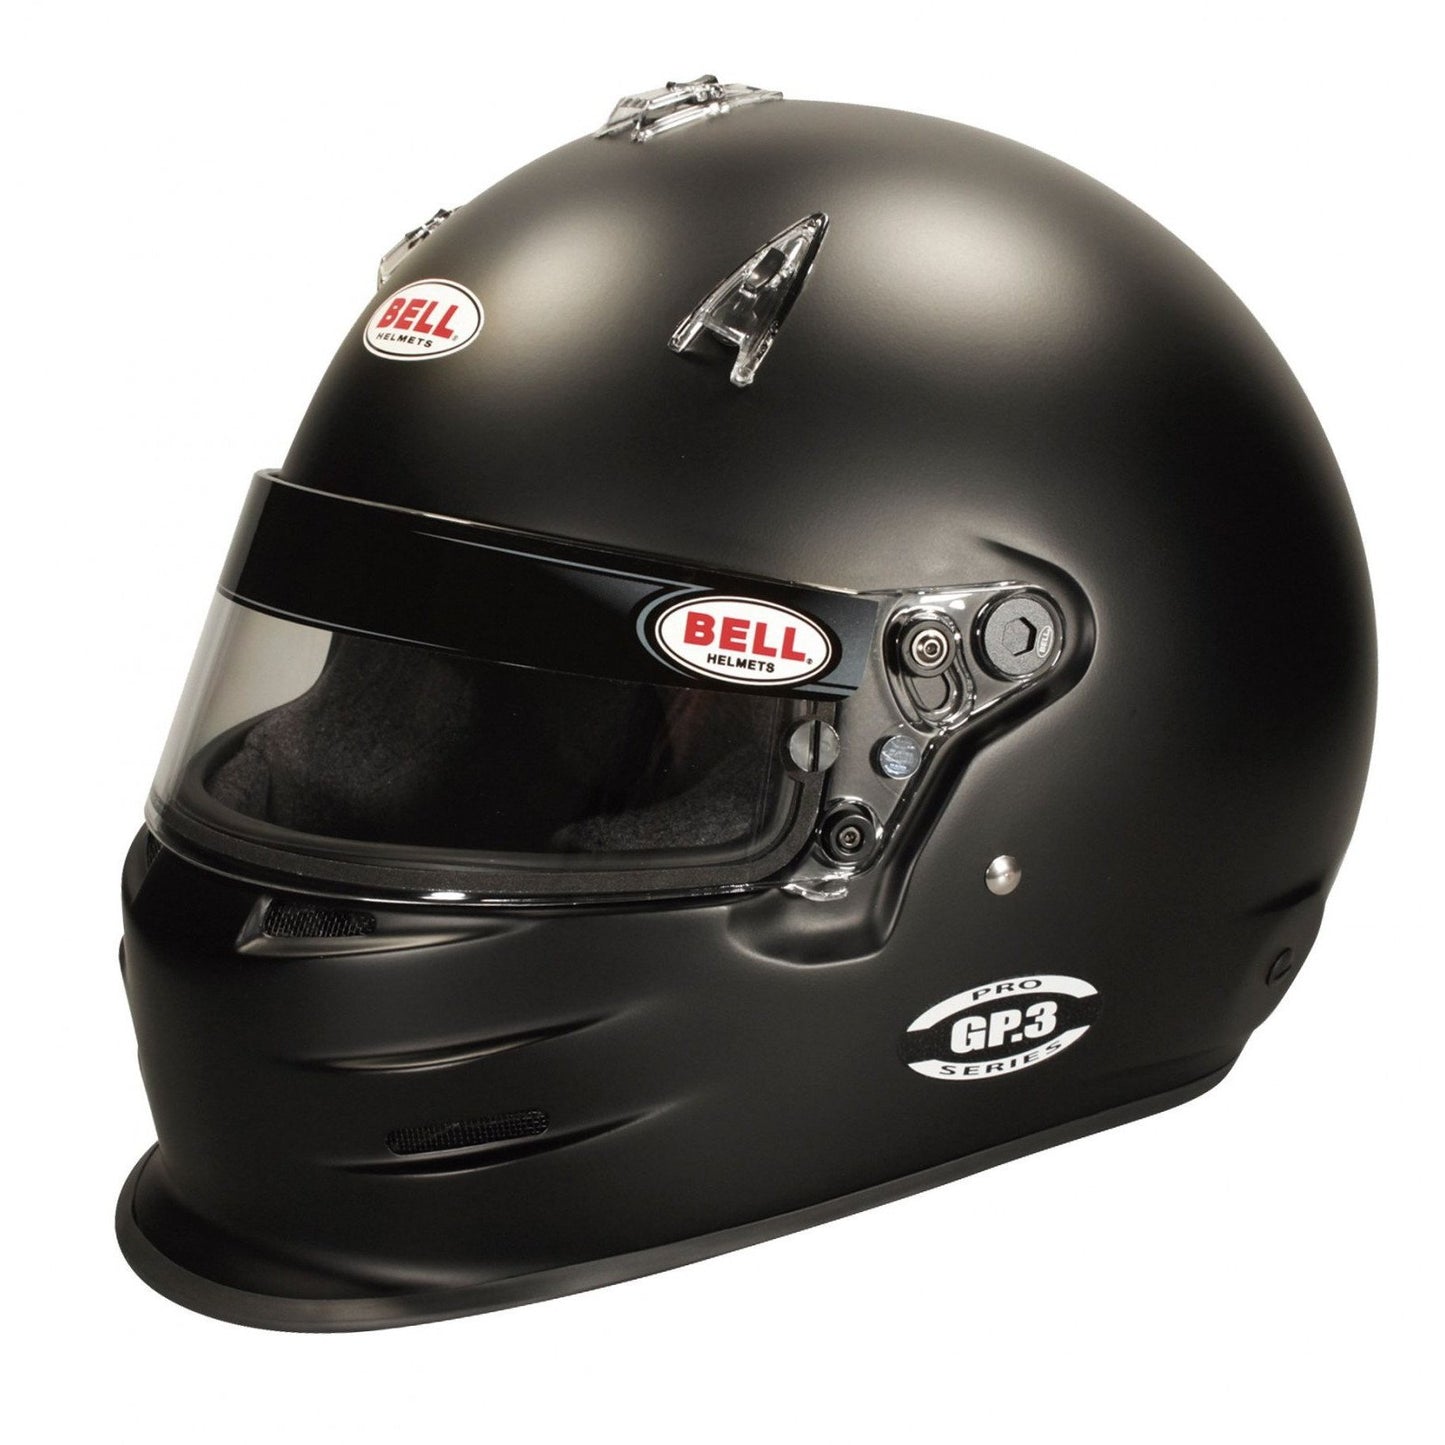 Bell GP3 Black Racing Helmet - 60 cm-BEL-1313014-Helmets-Bell-JDMuscle